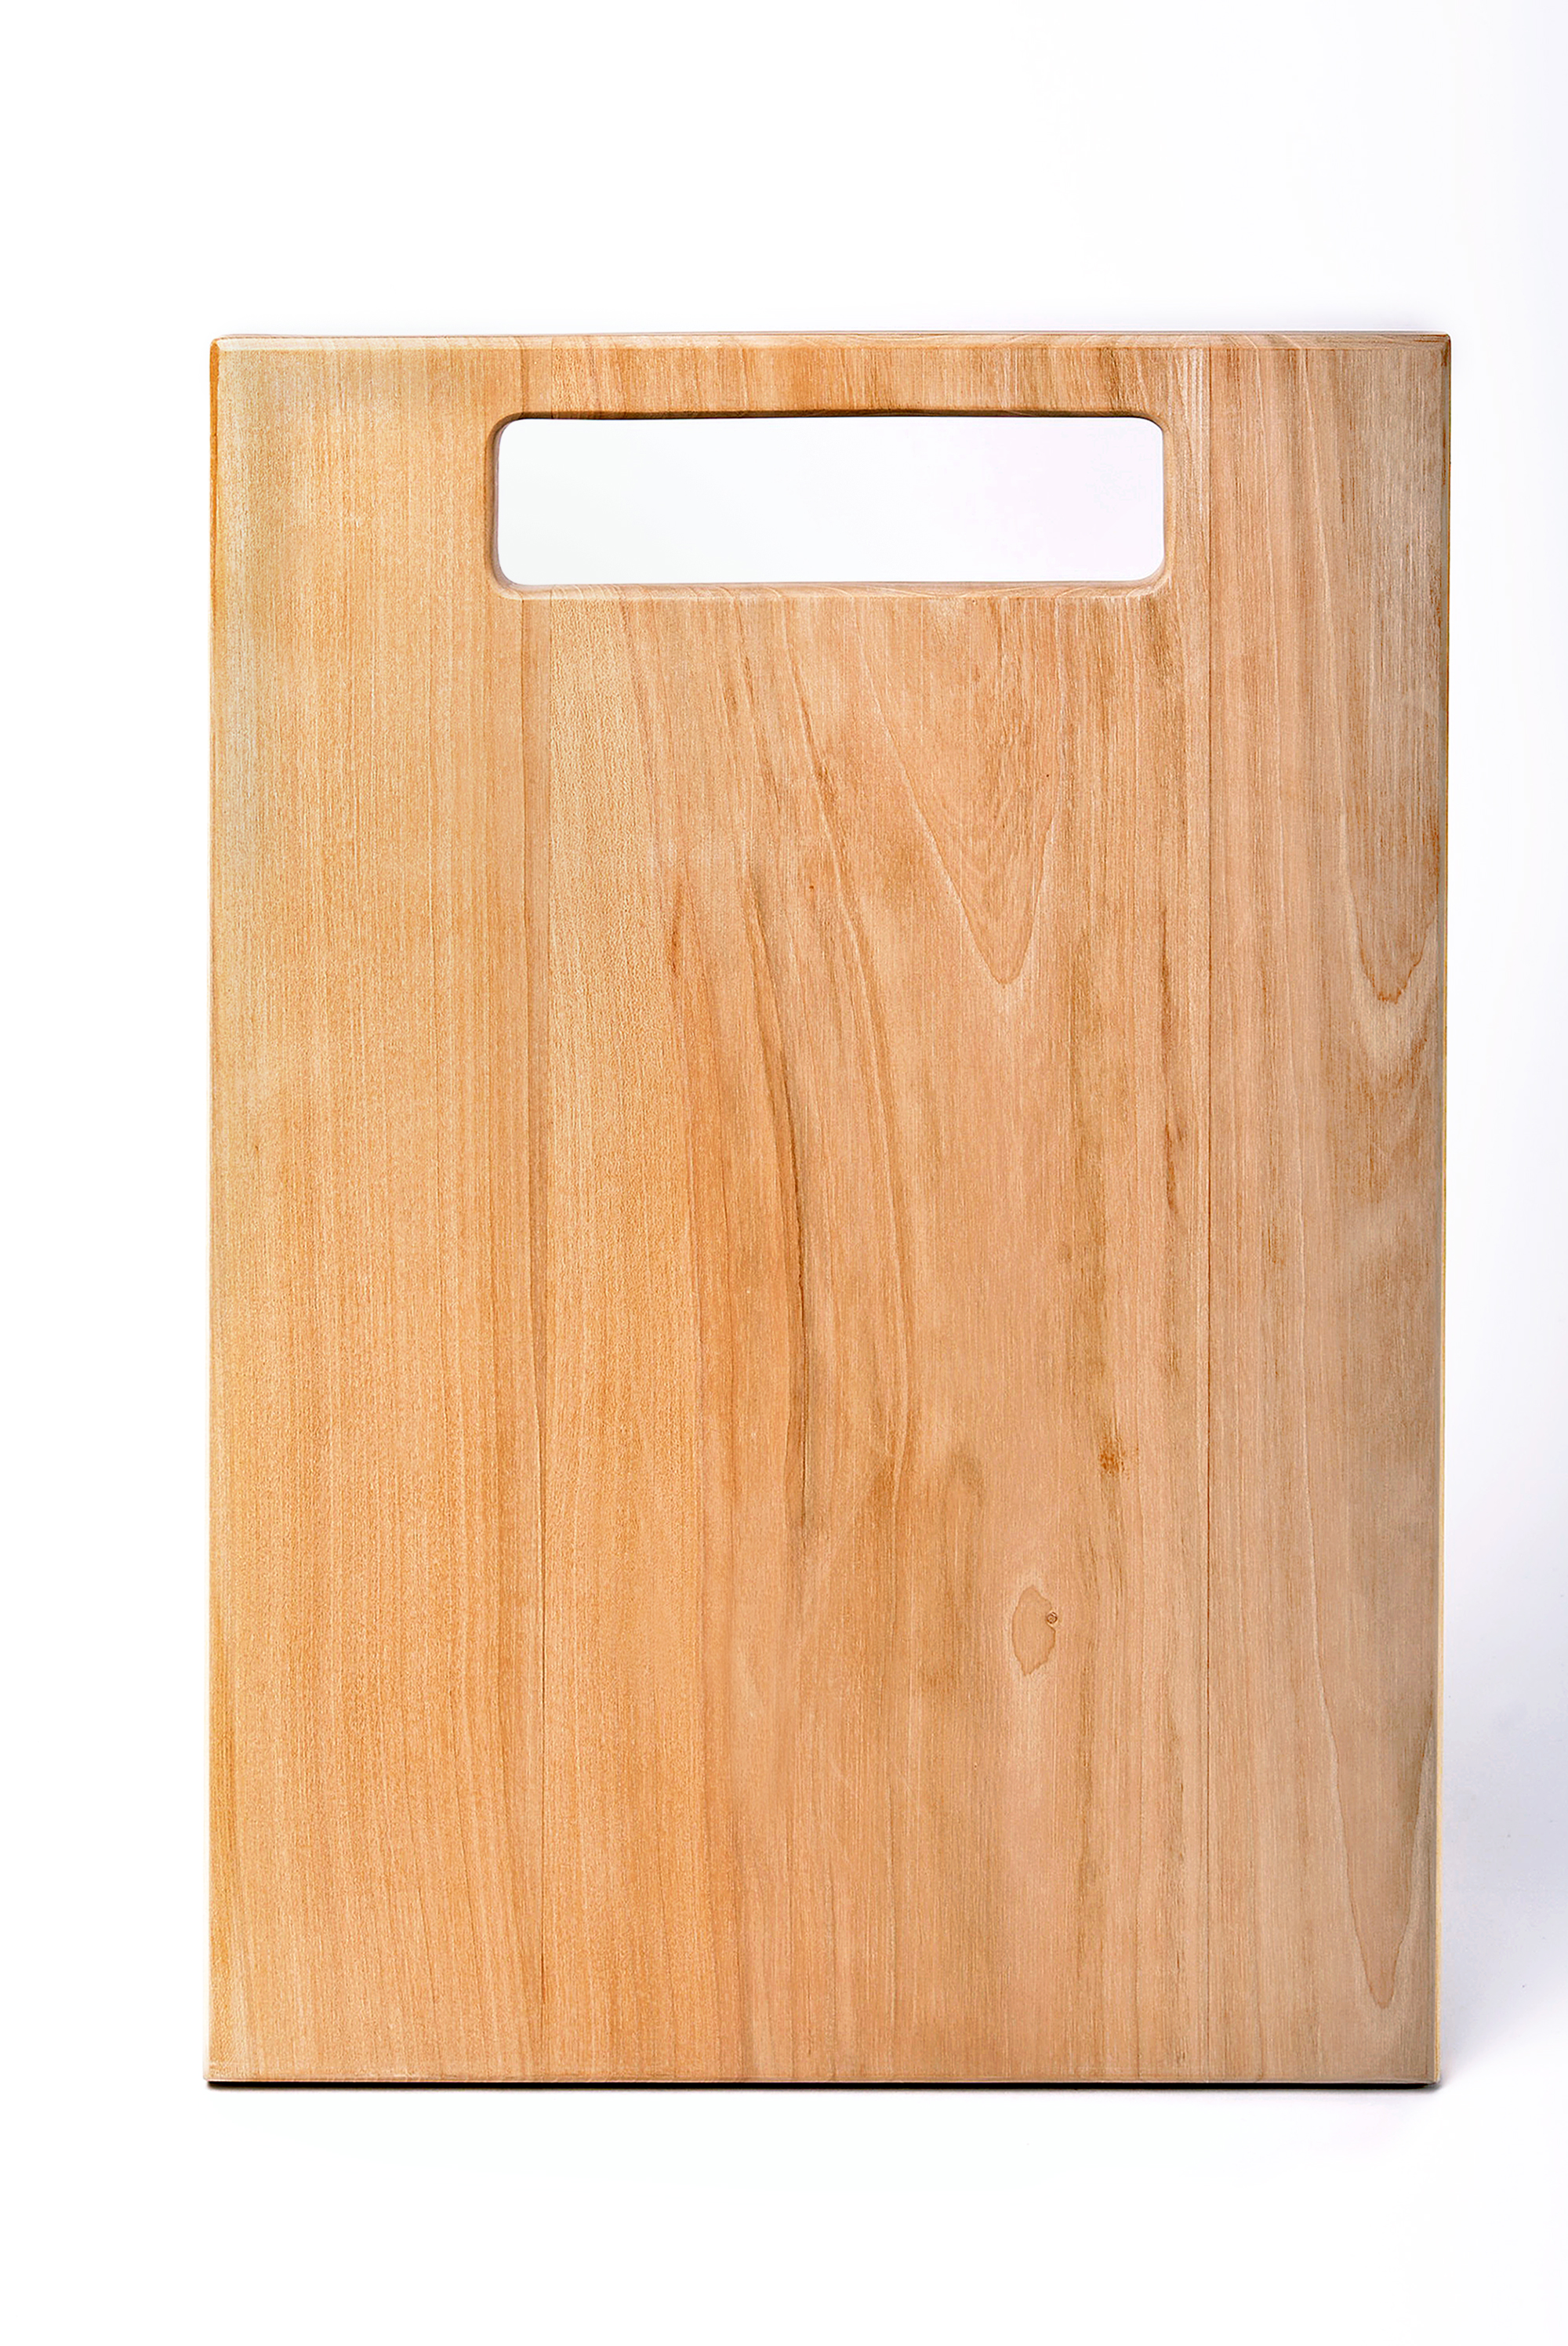 Персонализированный подарок, разделочная доска ручной работы кухонные принадлежности домашний декор деревянная доска фото 4